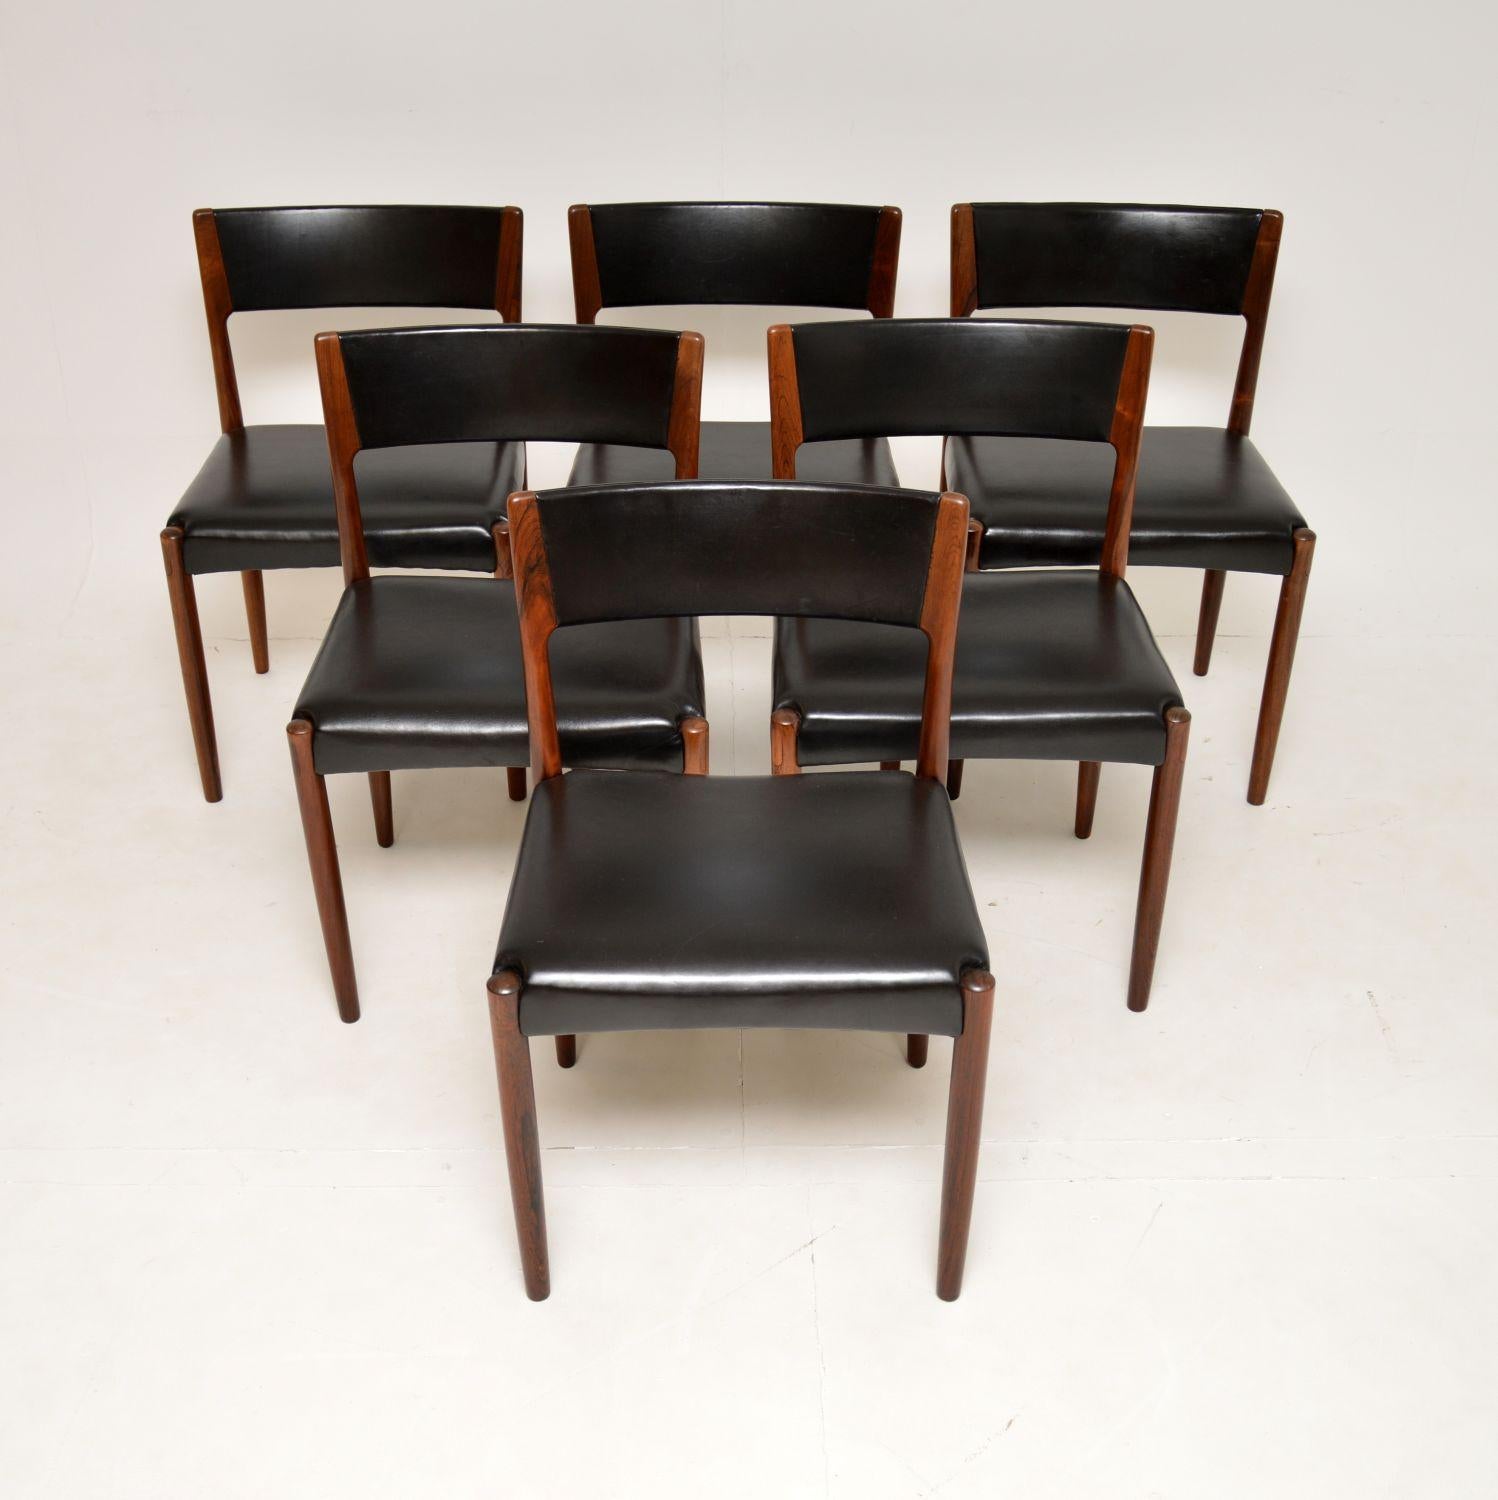 Ein wunderschöner Satz dänischer Esszimmerstühle mit schwarzer Lederpolsterung. Sie wurden von Harry Ostergaard entworfen und in den 1960er Jahren von Randers hergestellt.

Sie sind von exquisiter Qualität, haben ein wunderschönes Design und